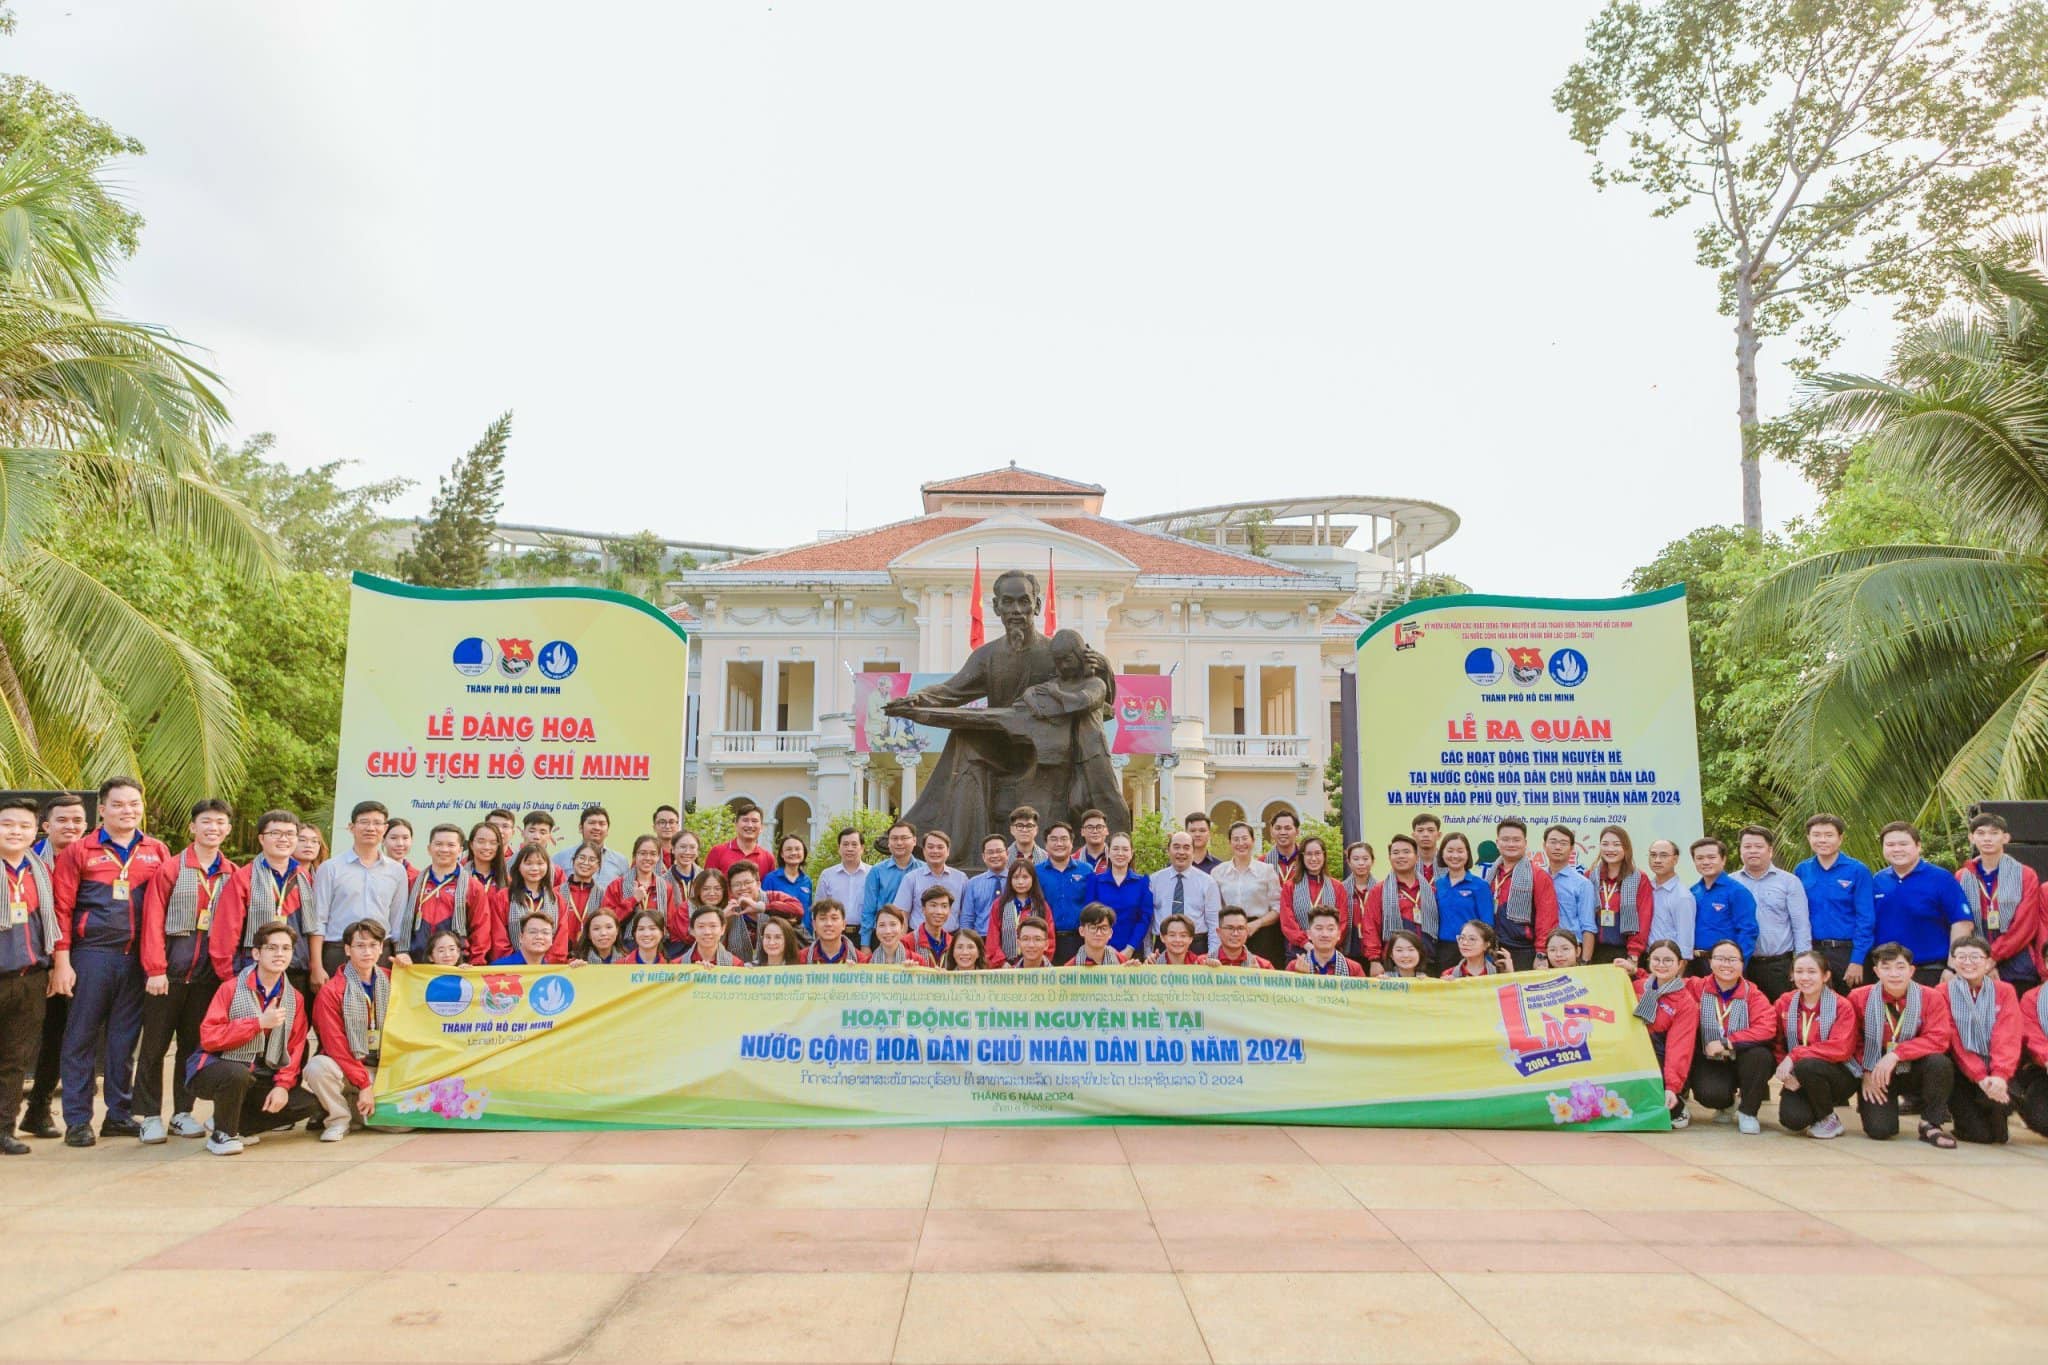 120 chiến sĩ tình nguyện thành phố Hồ Chí Minh hoạt động hè tại Lào